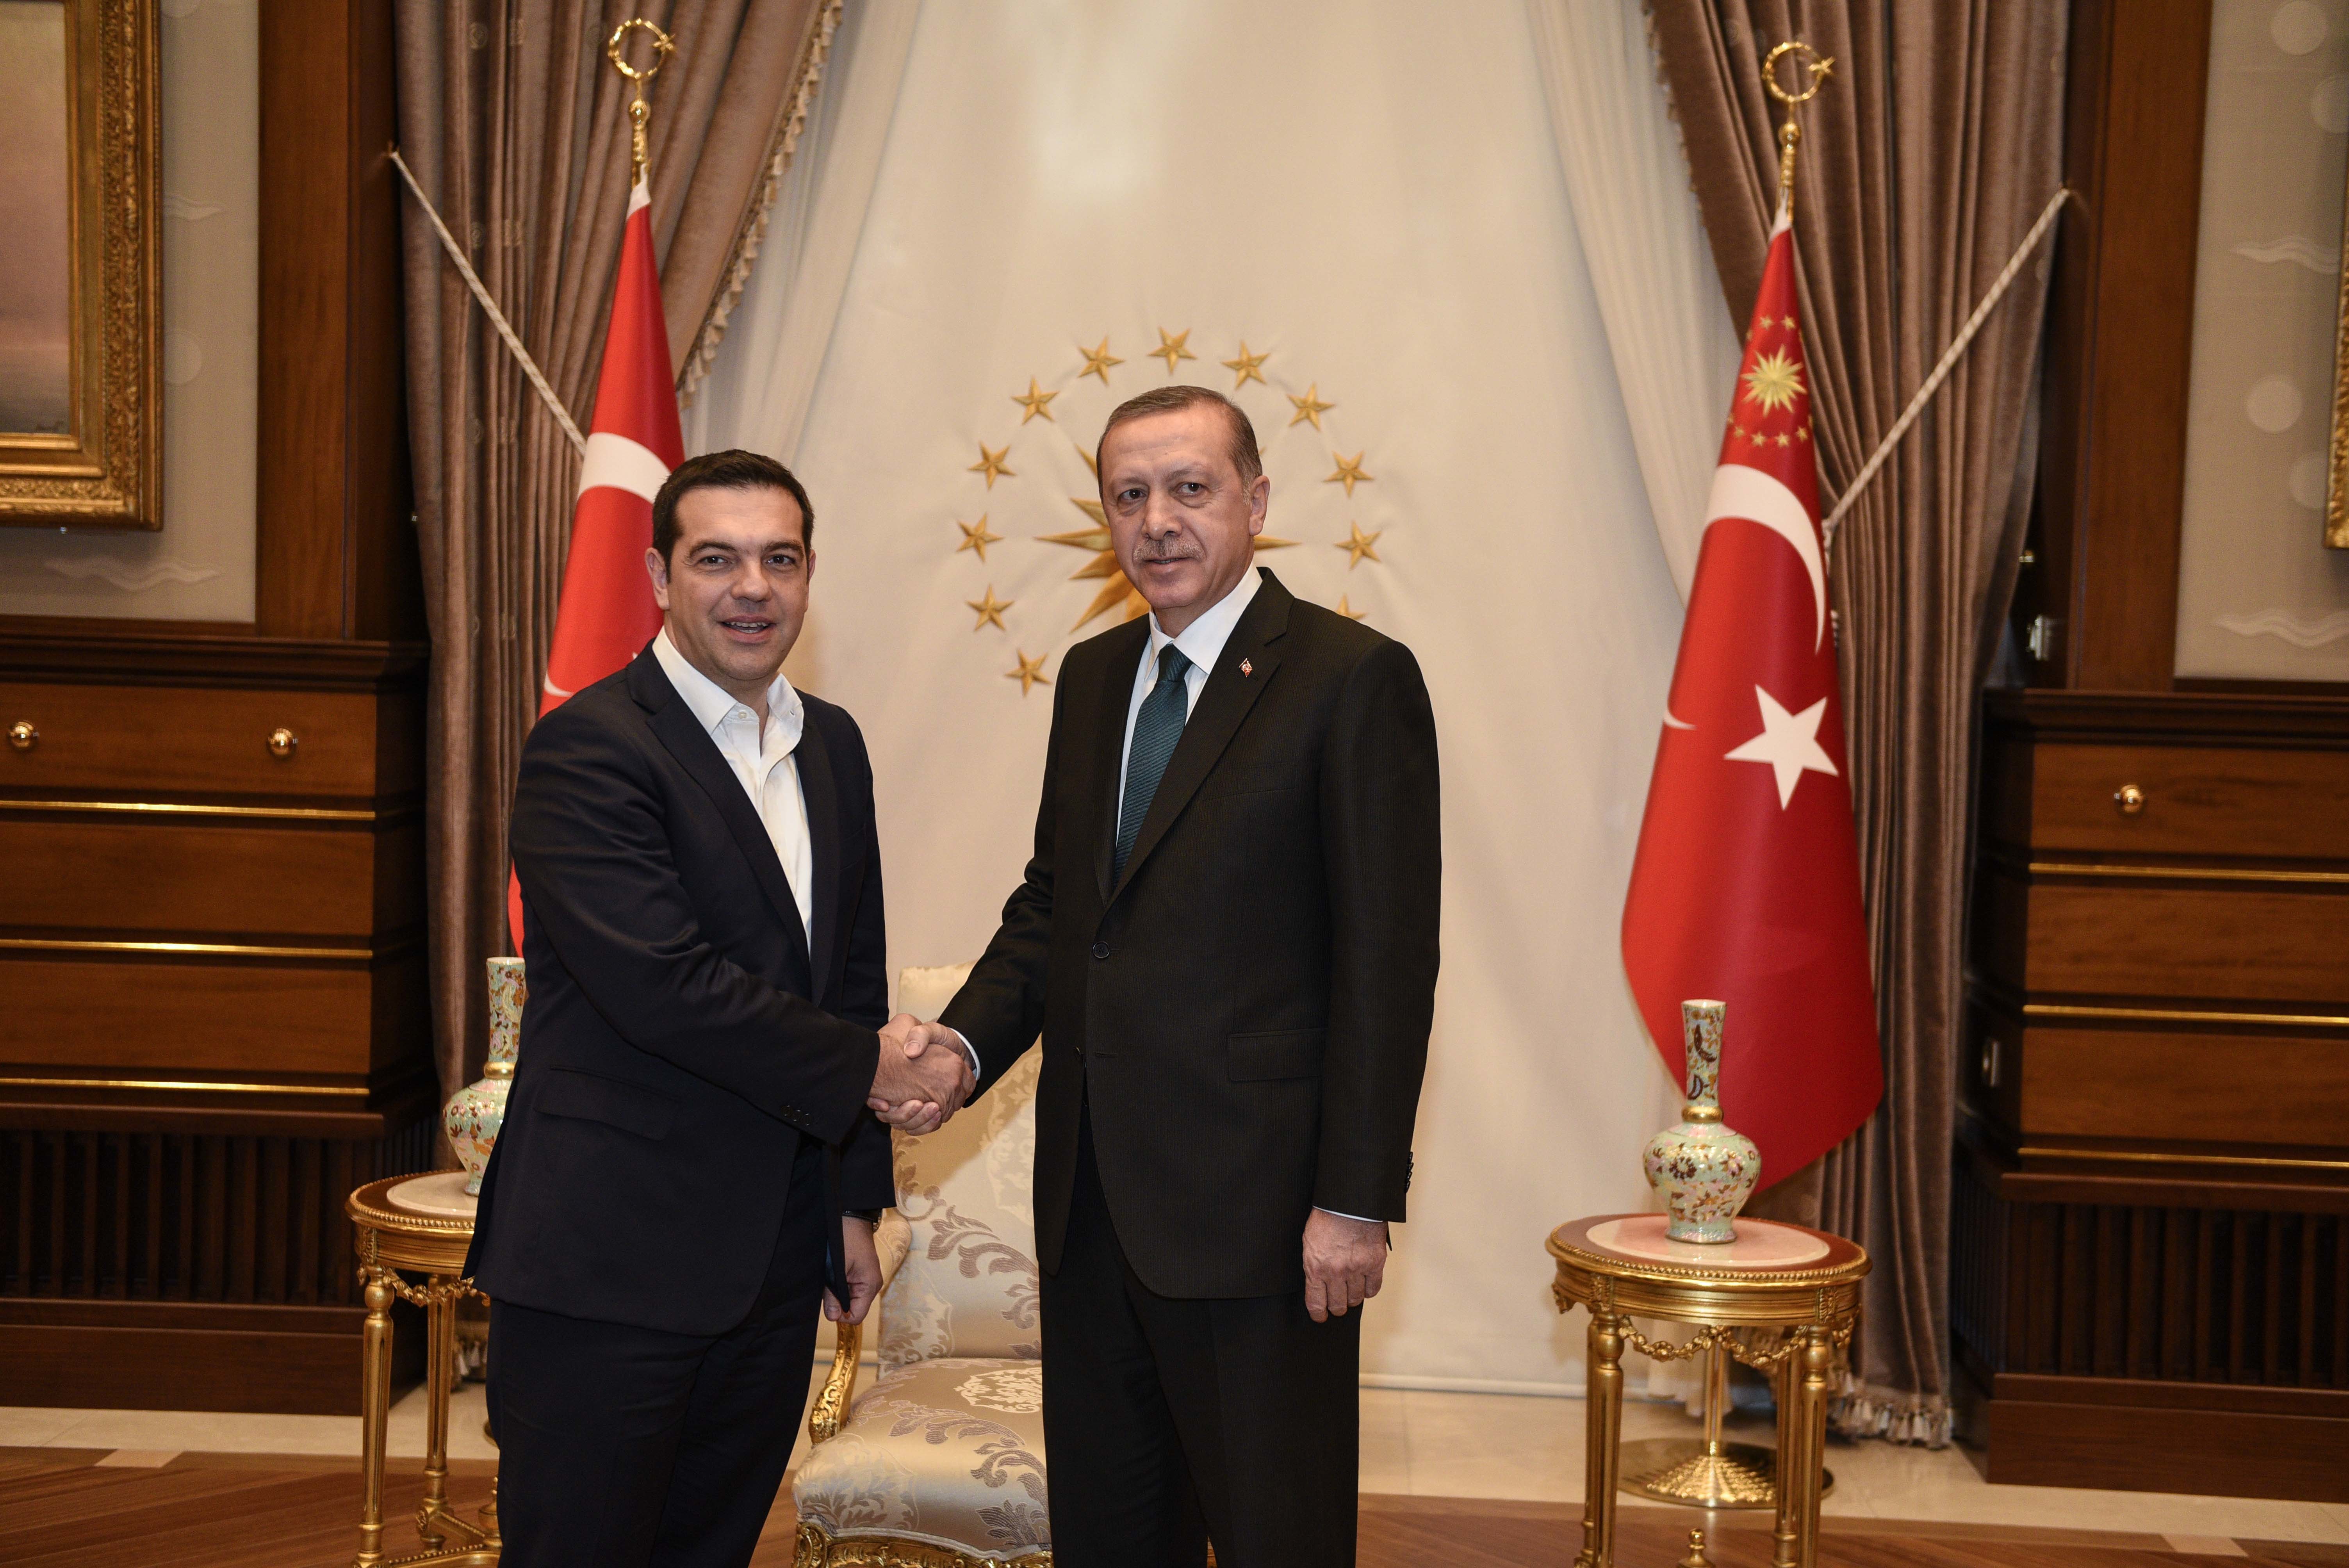 Ο Αλέξης Τσίπρας στο παλάτι του Ερντογάν – Το πρόγραμμα του πρωθυπουργού στην Τουρκία